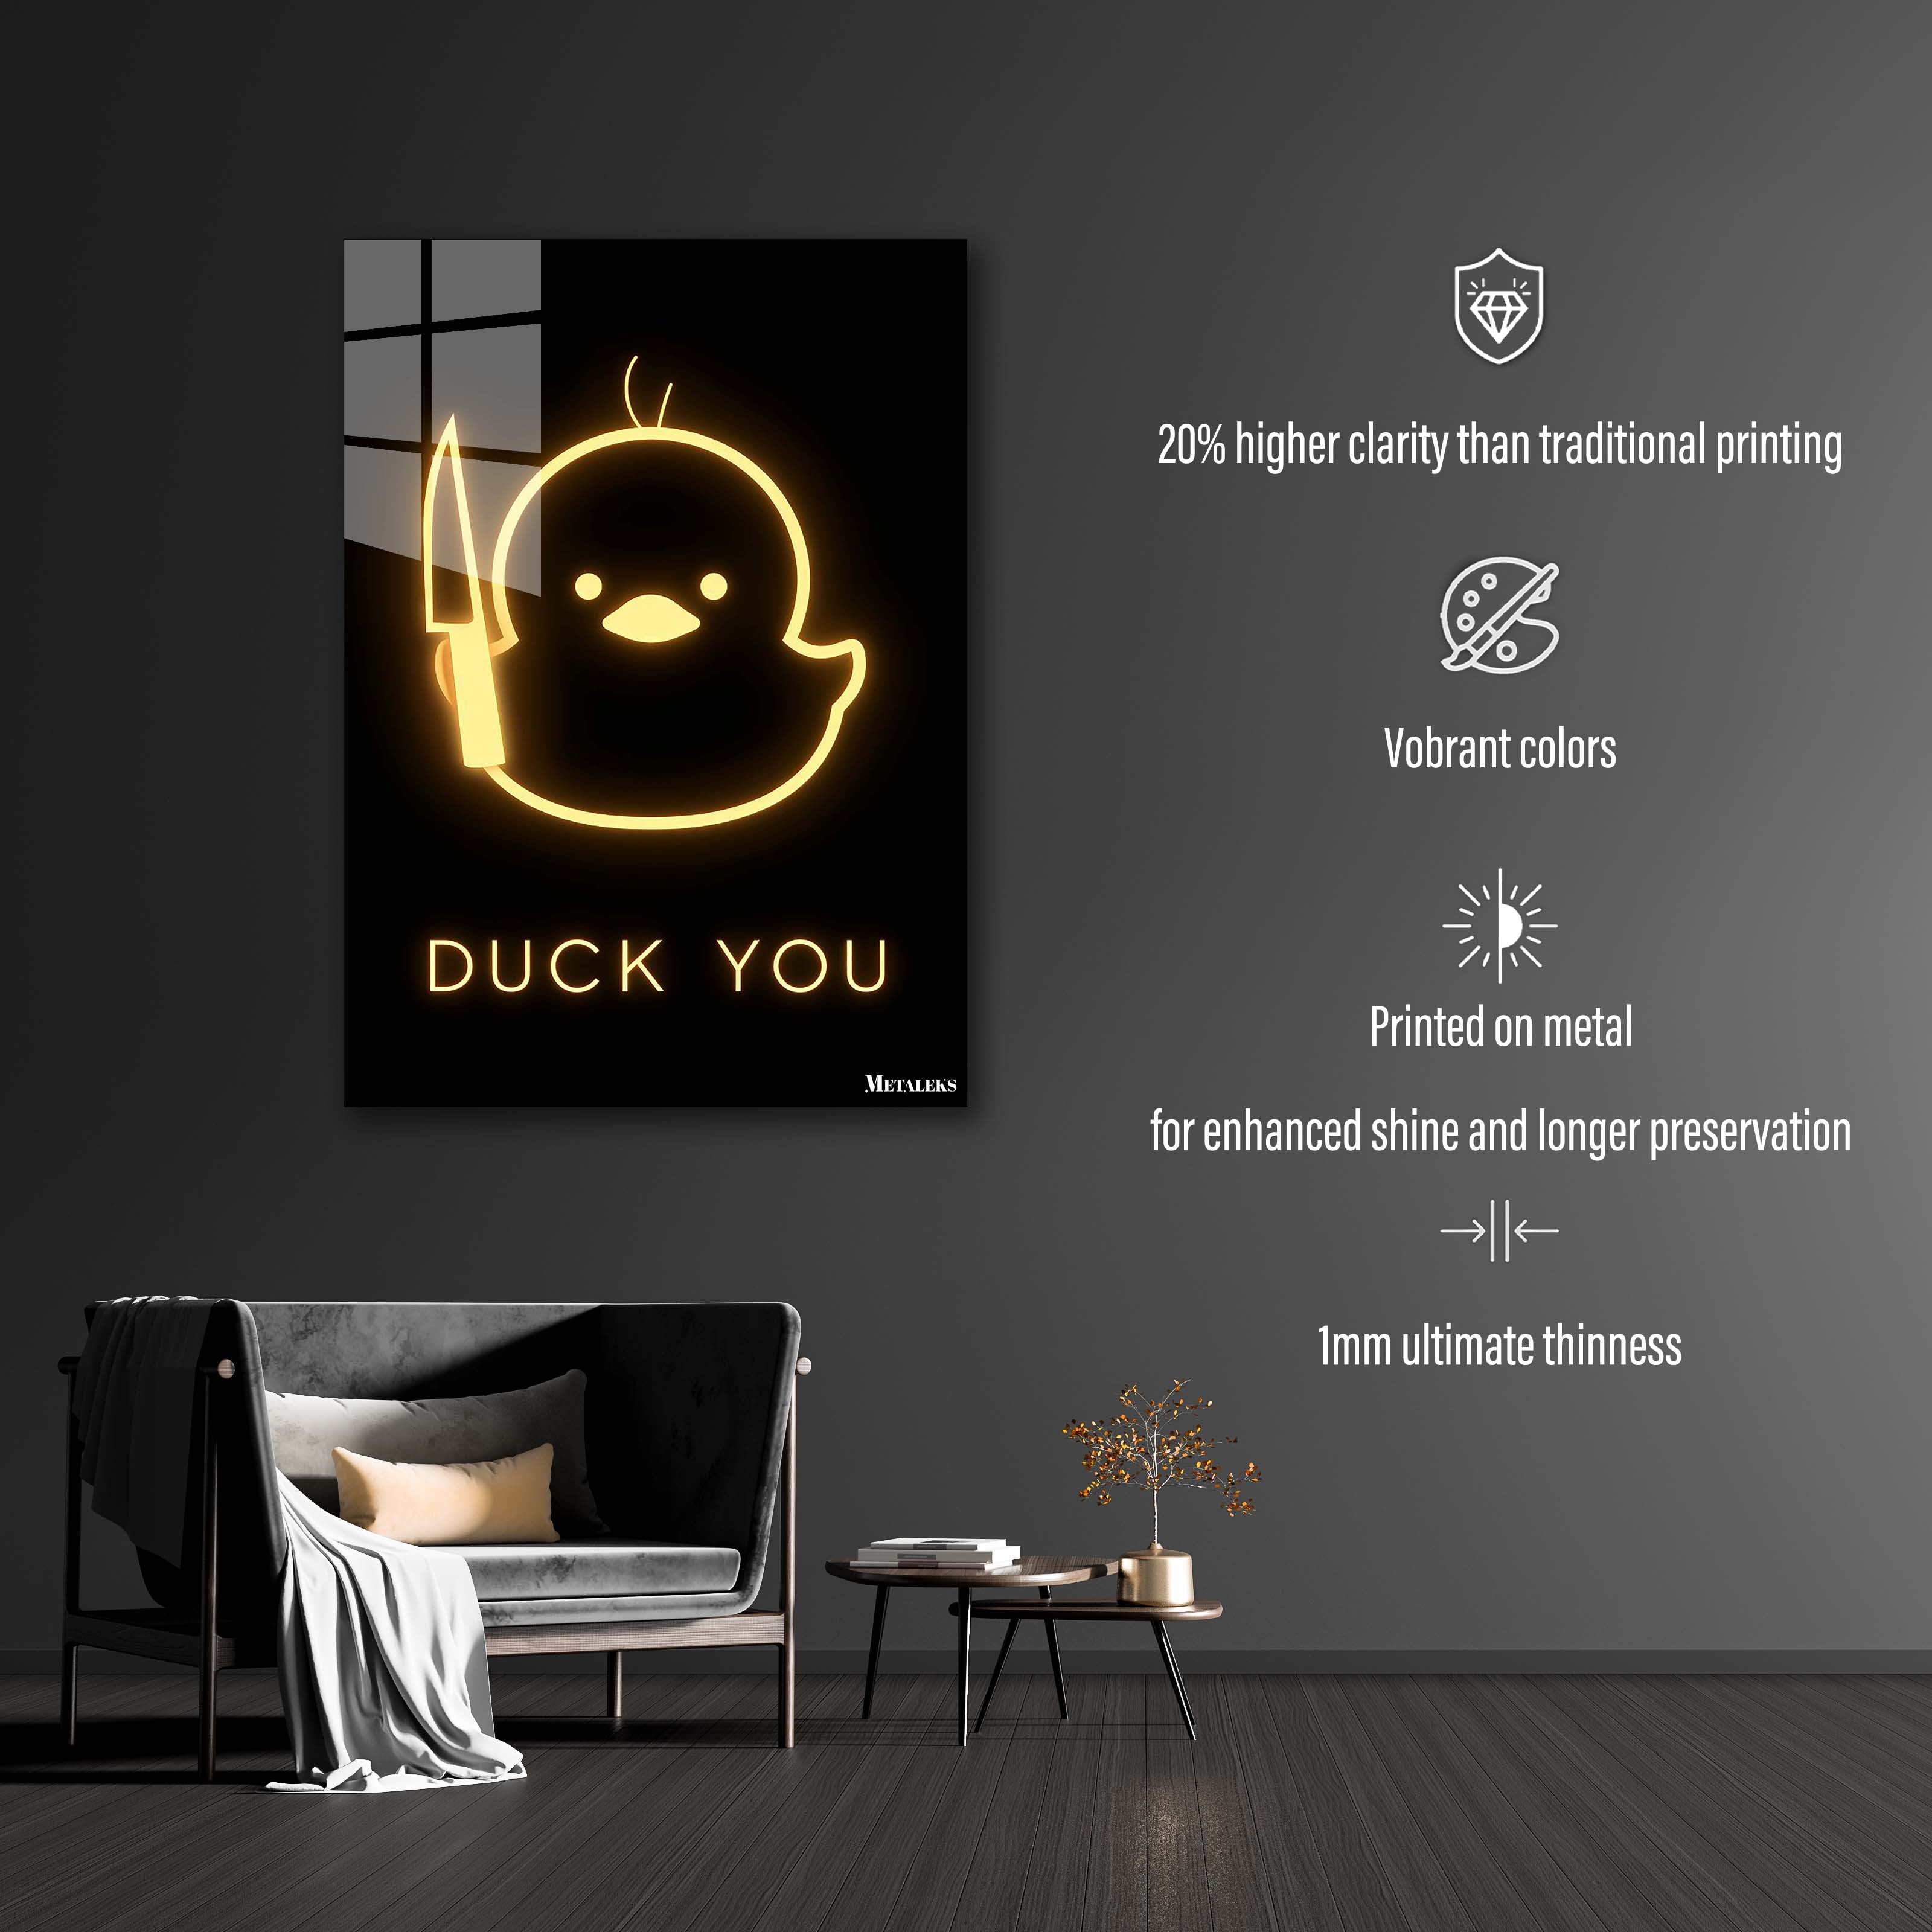 Neon Duck You-designed by @Vizio